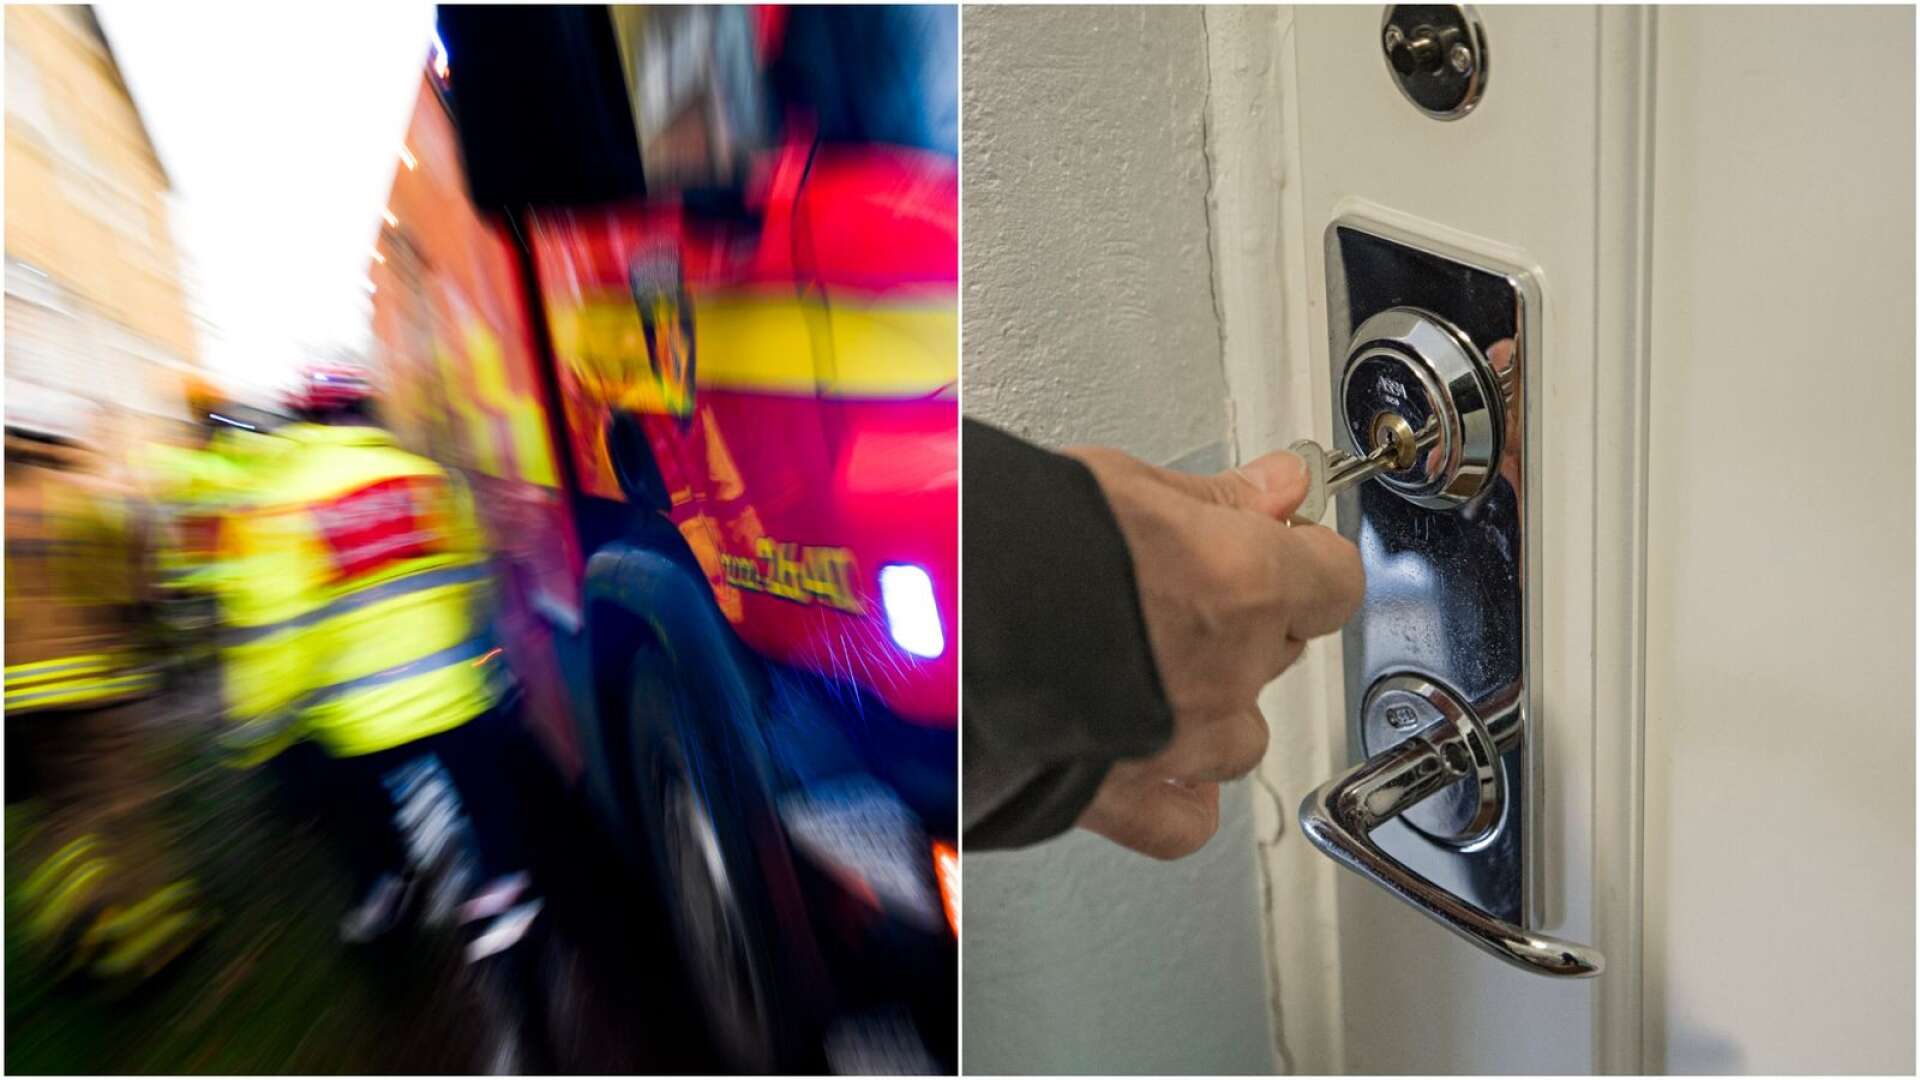 Familj omkom i lägenhetsbrand 2016: Dörren blev en dödsfälla när brandmännen inte kunde forcera den